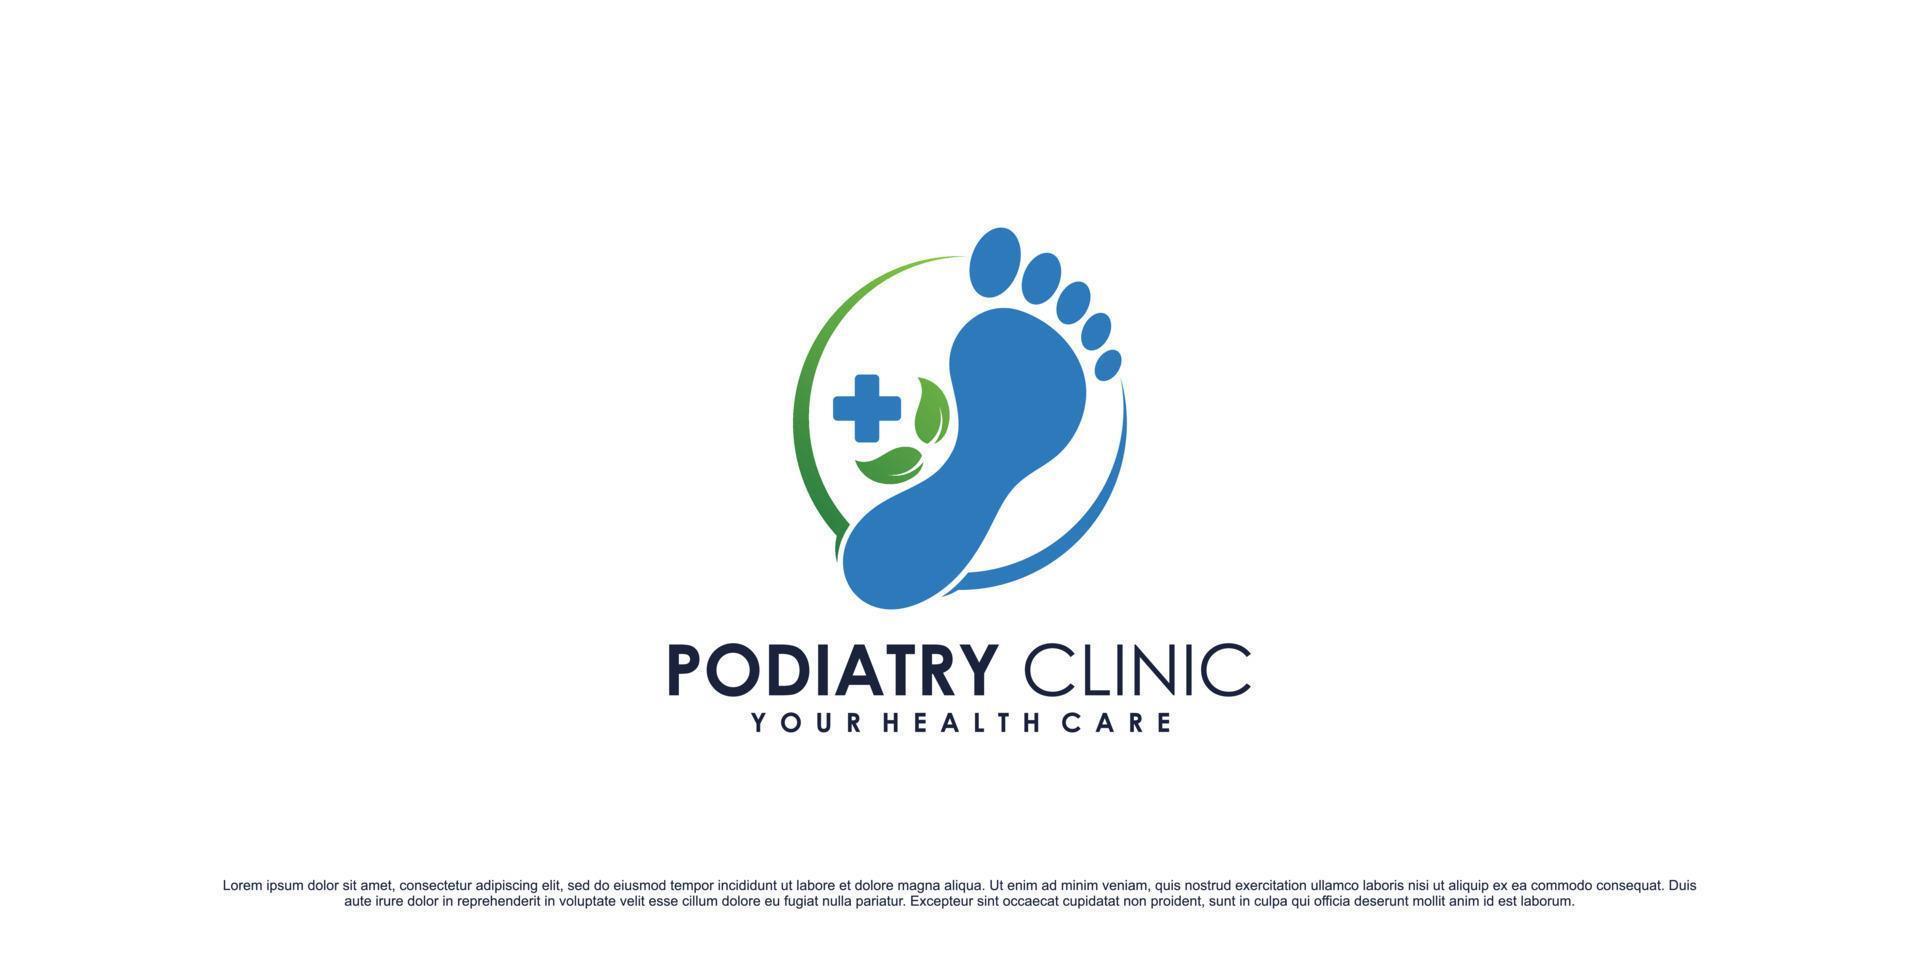 Podologie-Klinik-Logo-Design für Fußmassage und Spa mit kreativem Element-Premium-Vektor vektor